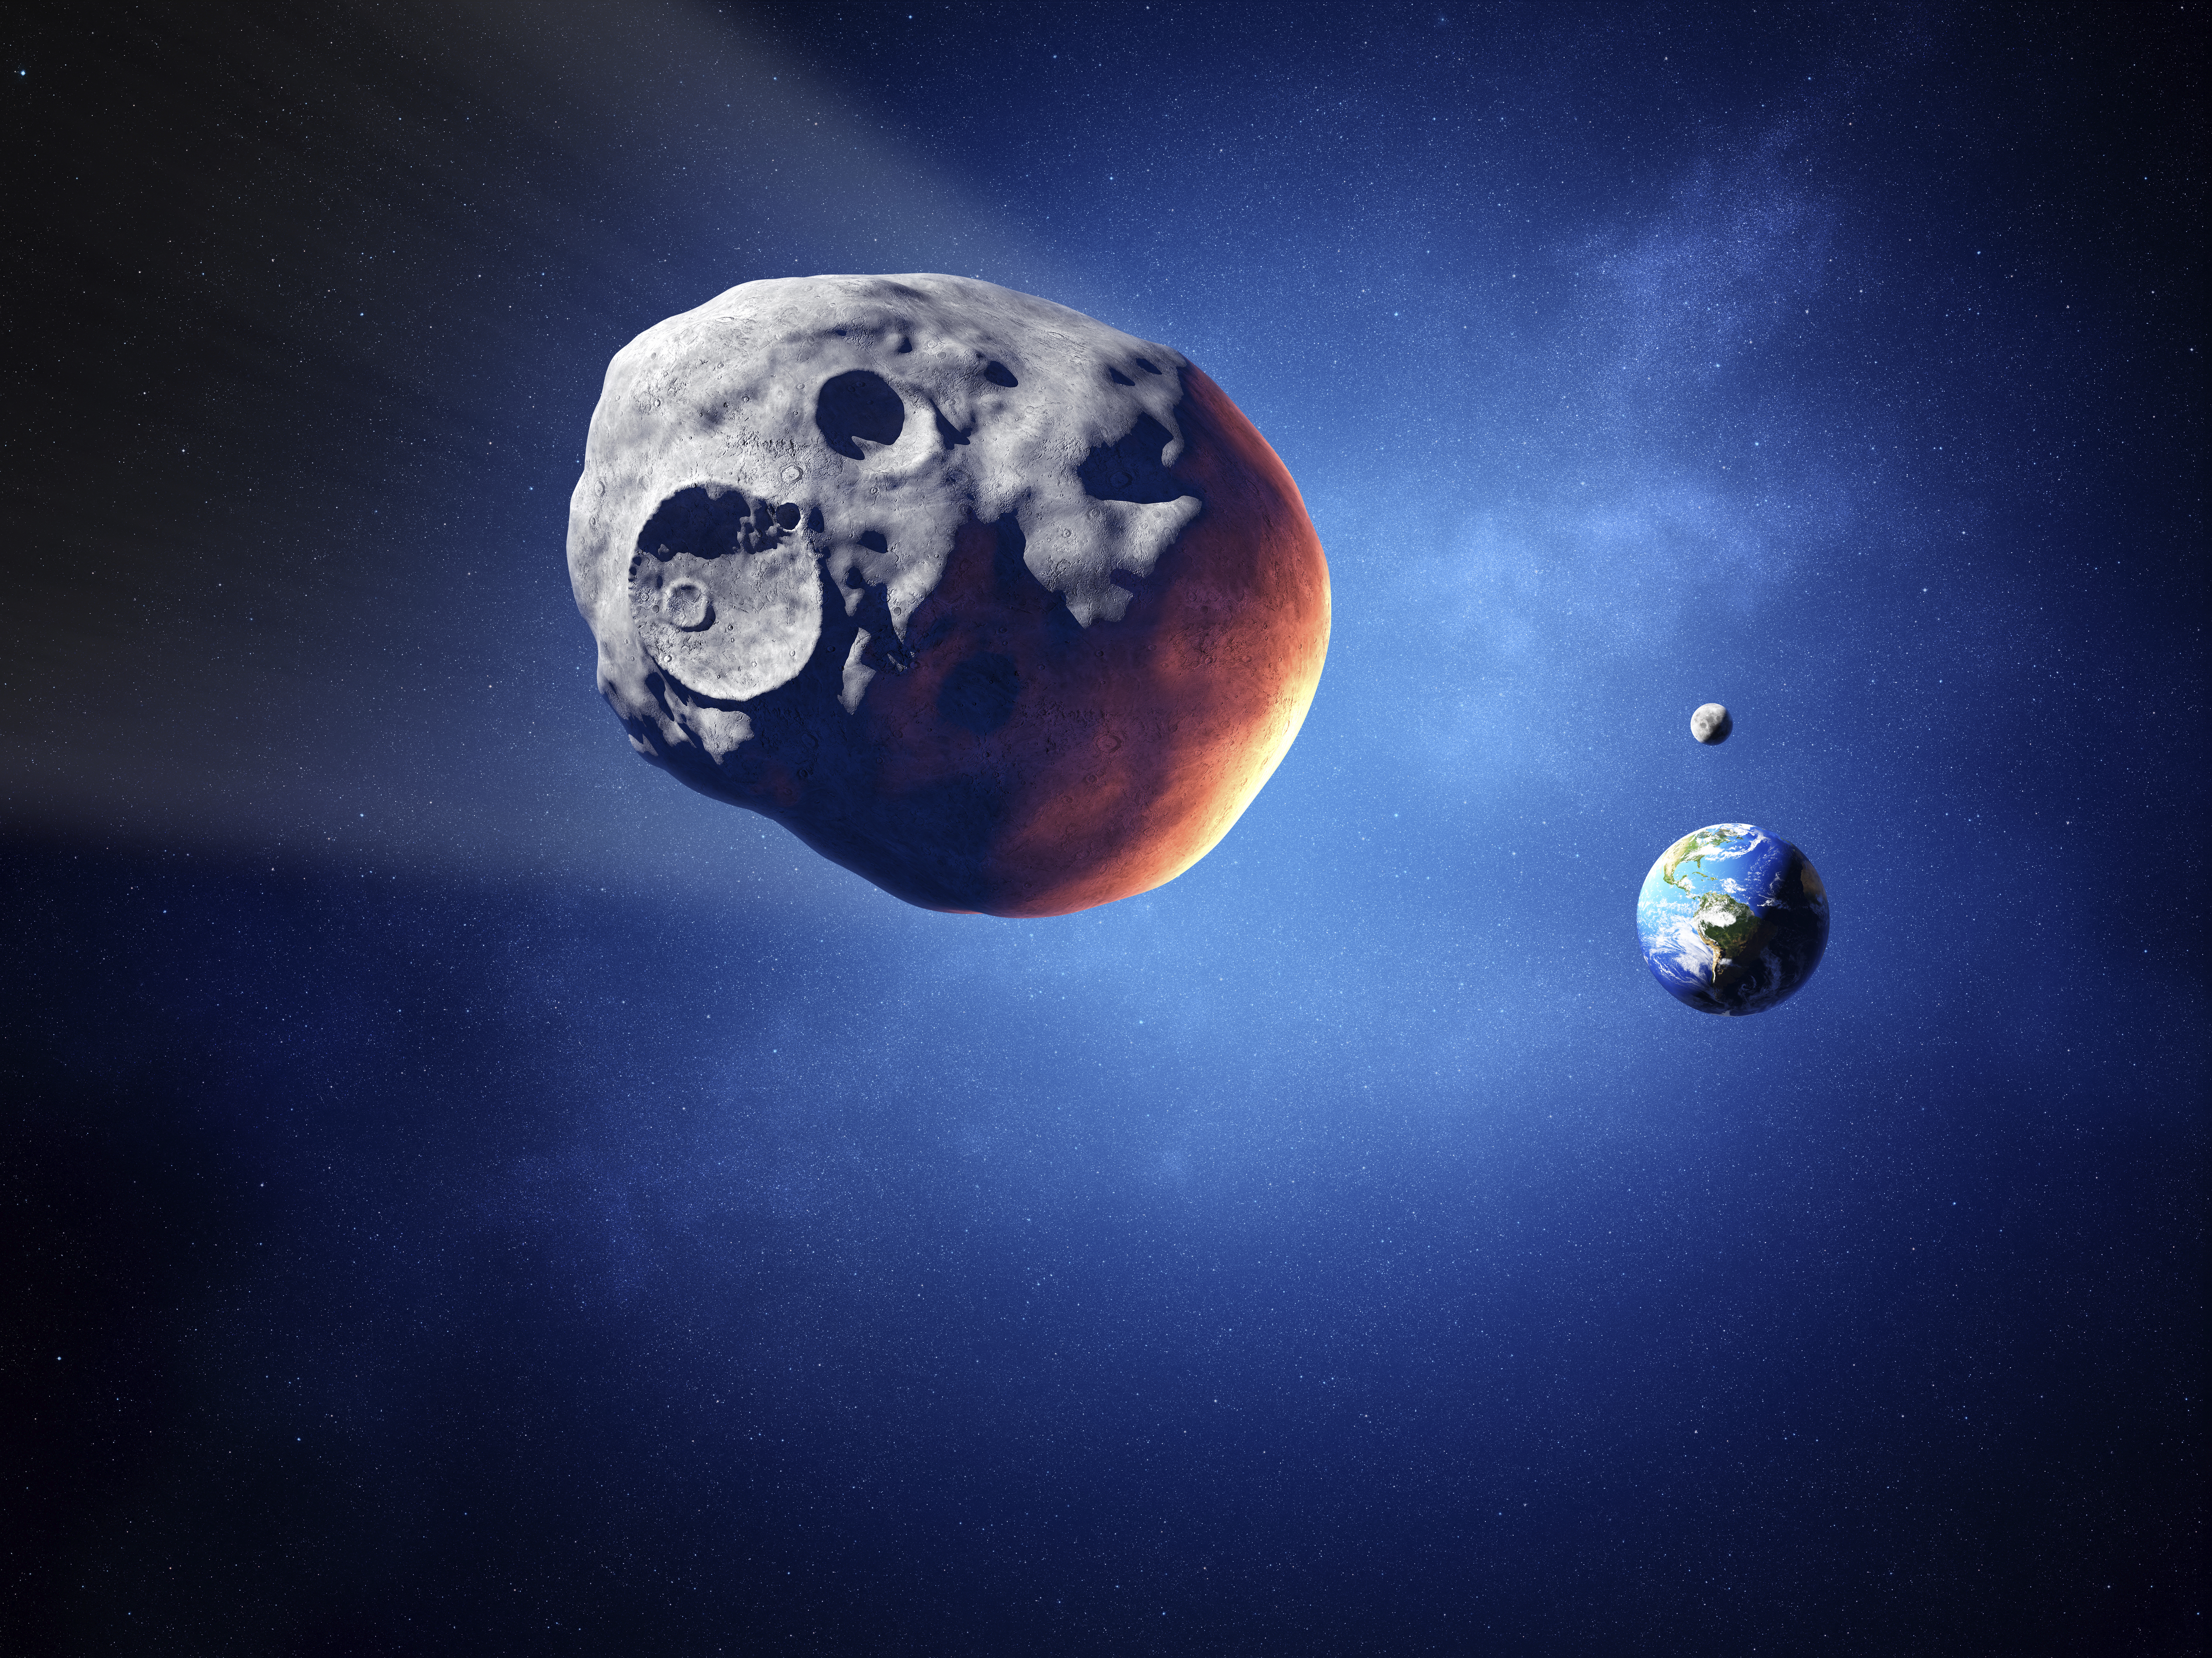 Bolygógyilkos aszteroidát fedeztek fel, a kutatók szerint keresztezheti a Föld pályáját